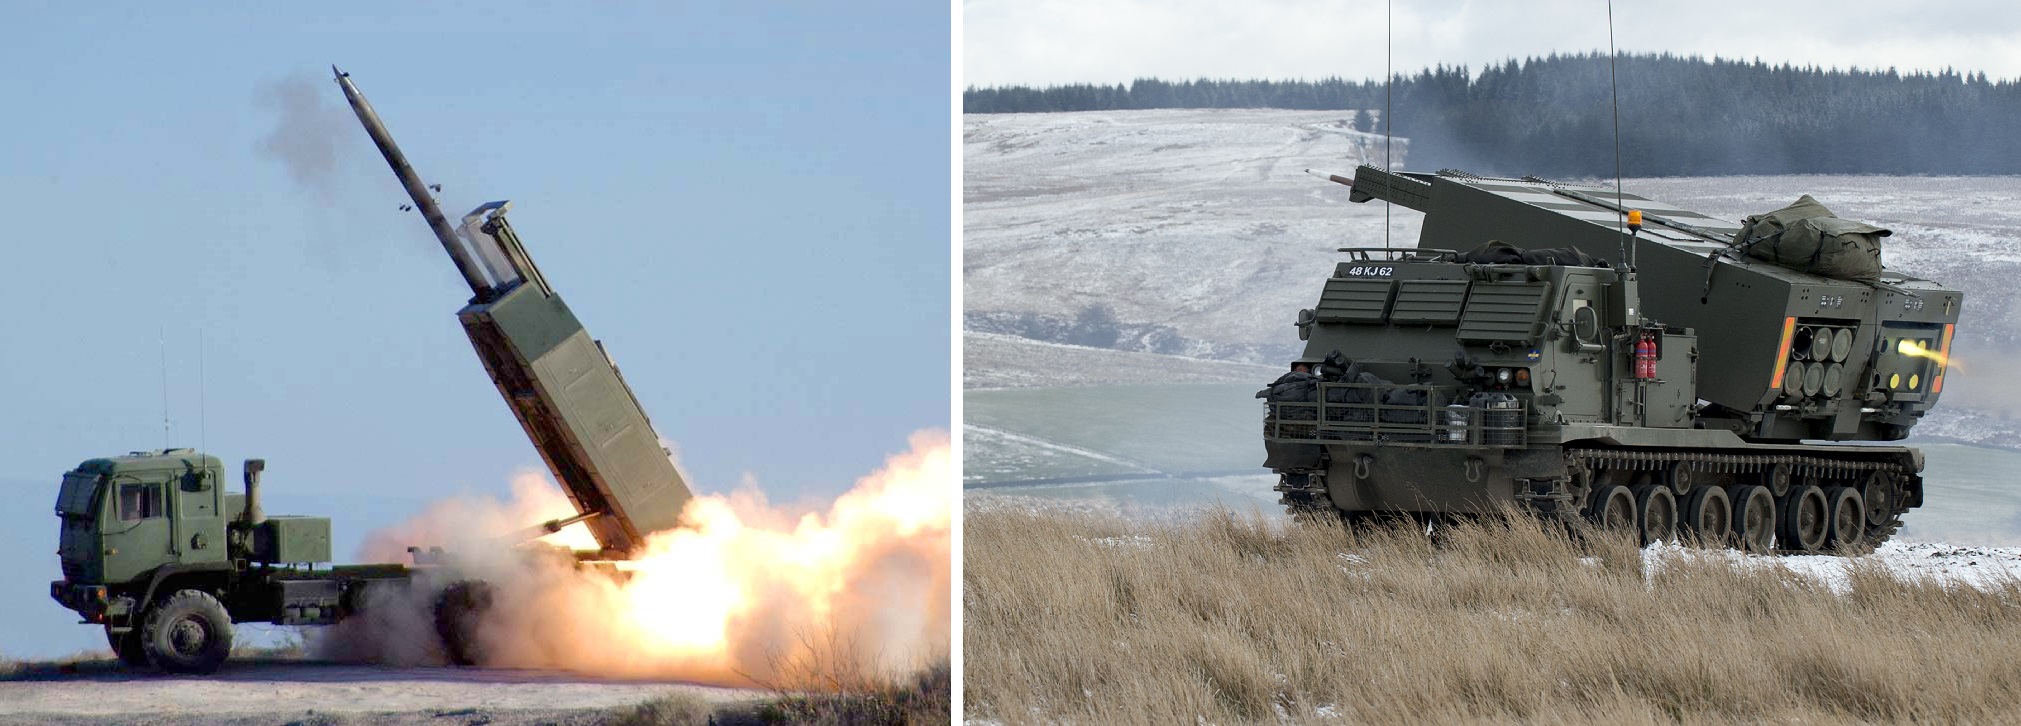 M270 MLRS i M142 HIMARS w akcji - w ciągu jednego dnia Siły Zbrojne Ukrainy zniszczyły 12 składów amunicji i 4 bazy wojskowe armii rosyjskiej